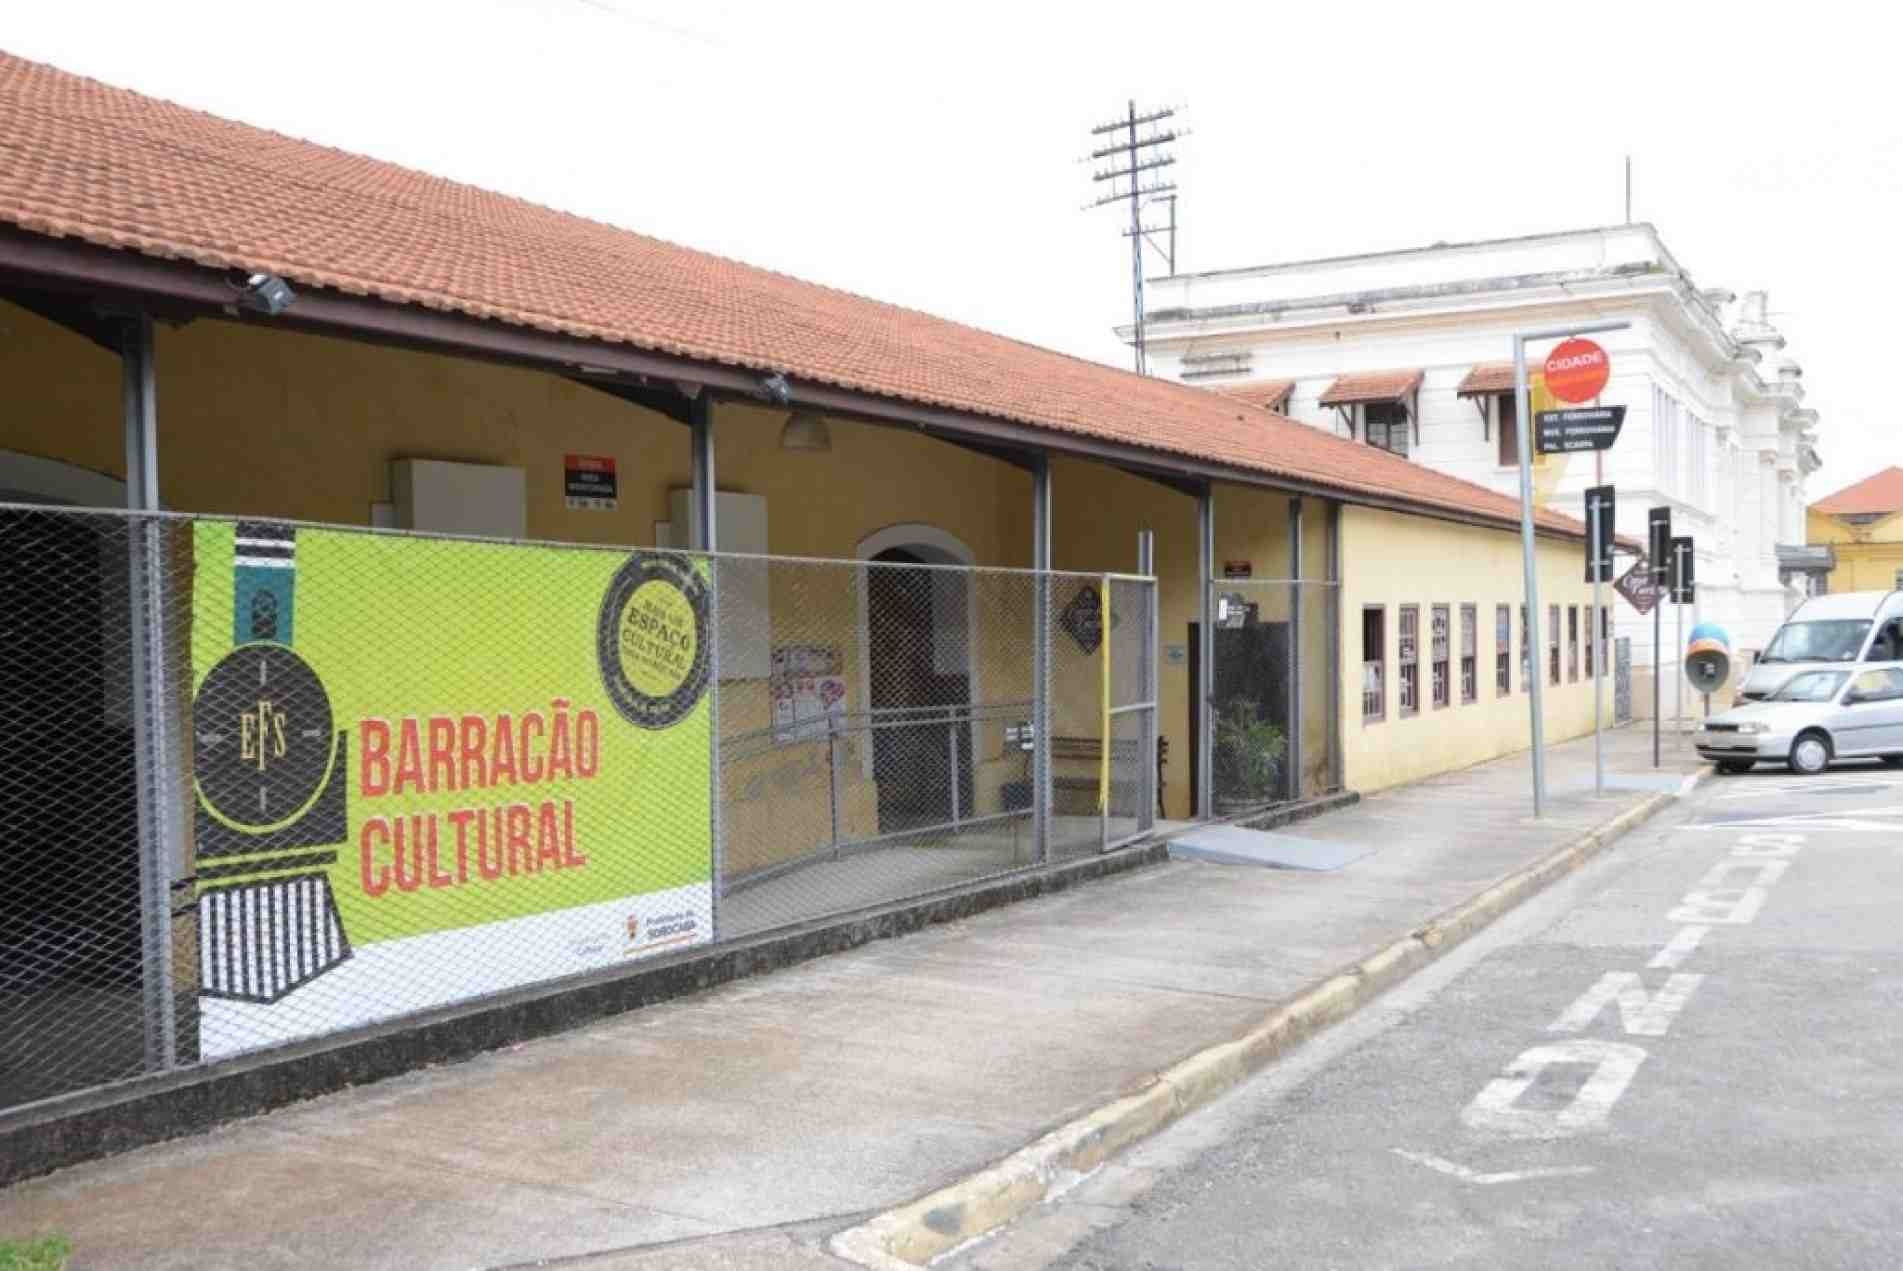 Barracão Cultural fica ao lado da antiga Estação Ferroviária, no Centro